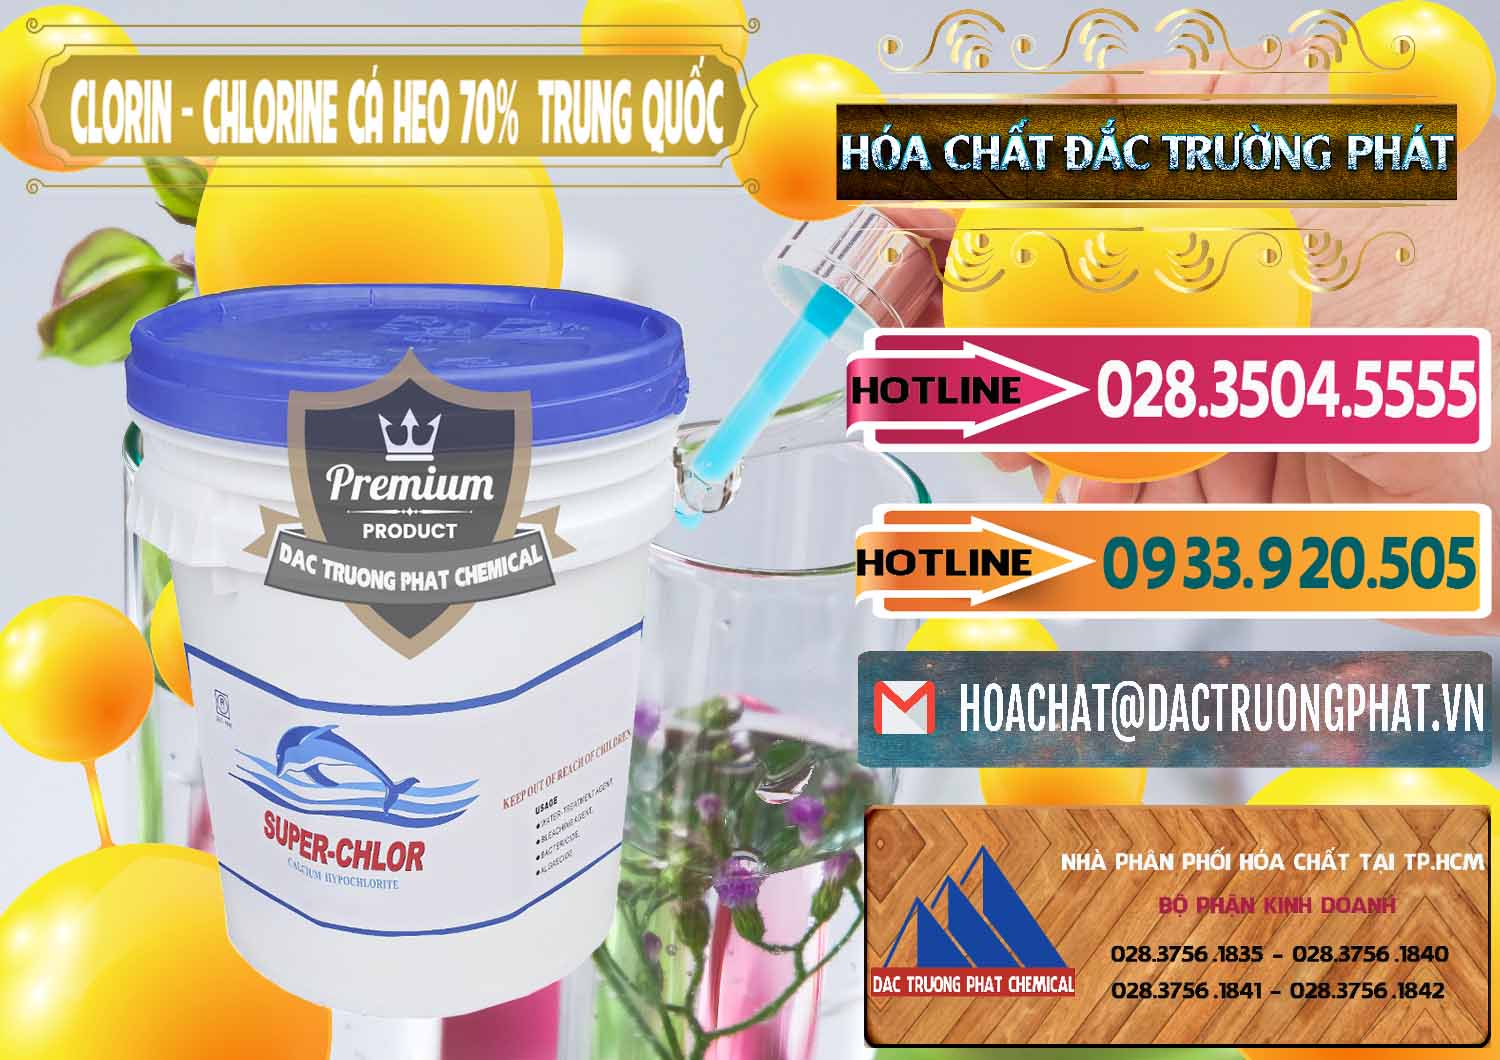 Phân phối _ bán Clorin - Chlorine Cá Heo 70% Super Chlor Nắp Xanh Trung Quốc China - 0209 - Công ty chuyên cung cấp ( kinh doanh ) hóa chất tại TP.HCM - dactruongphat.vn